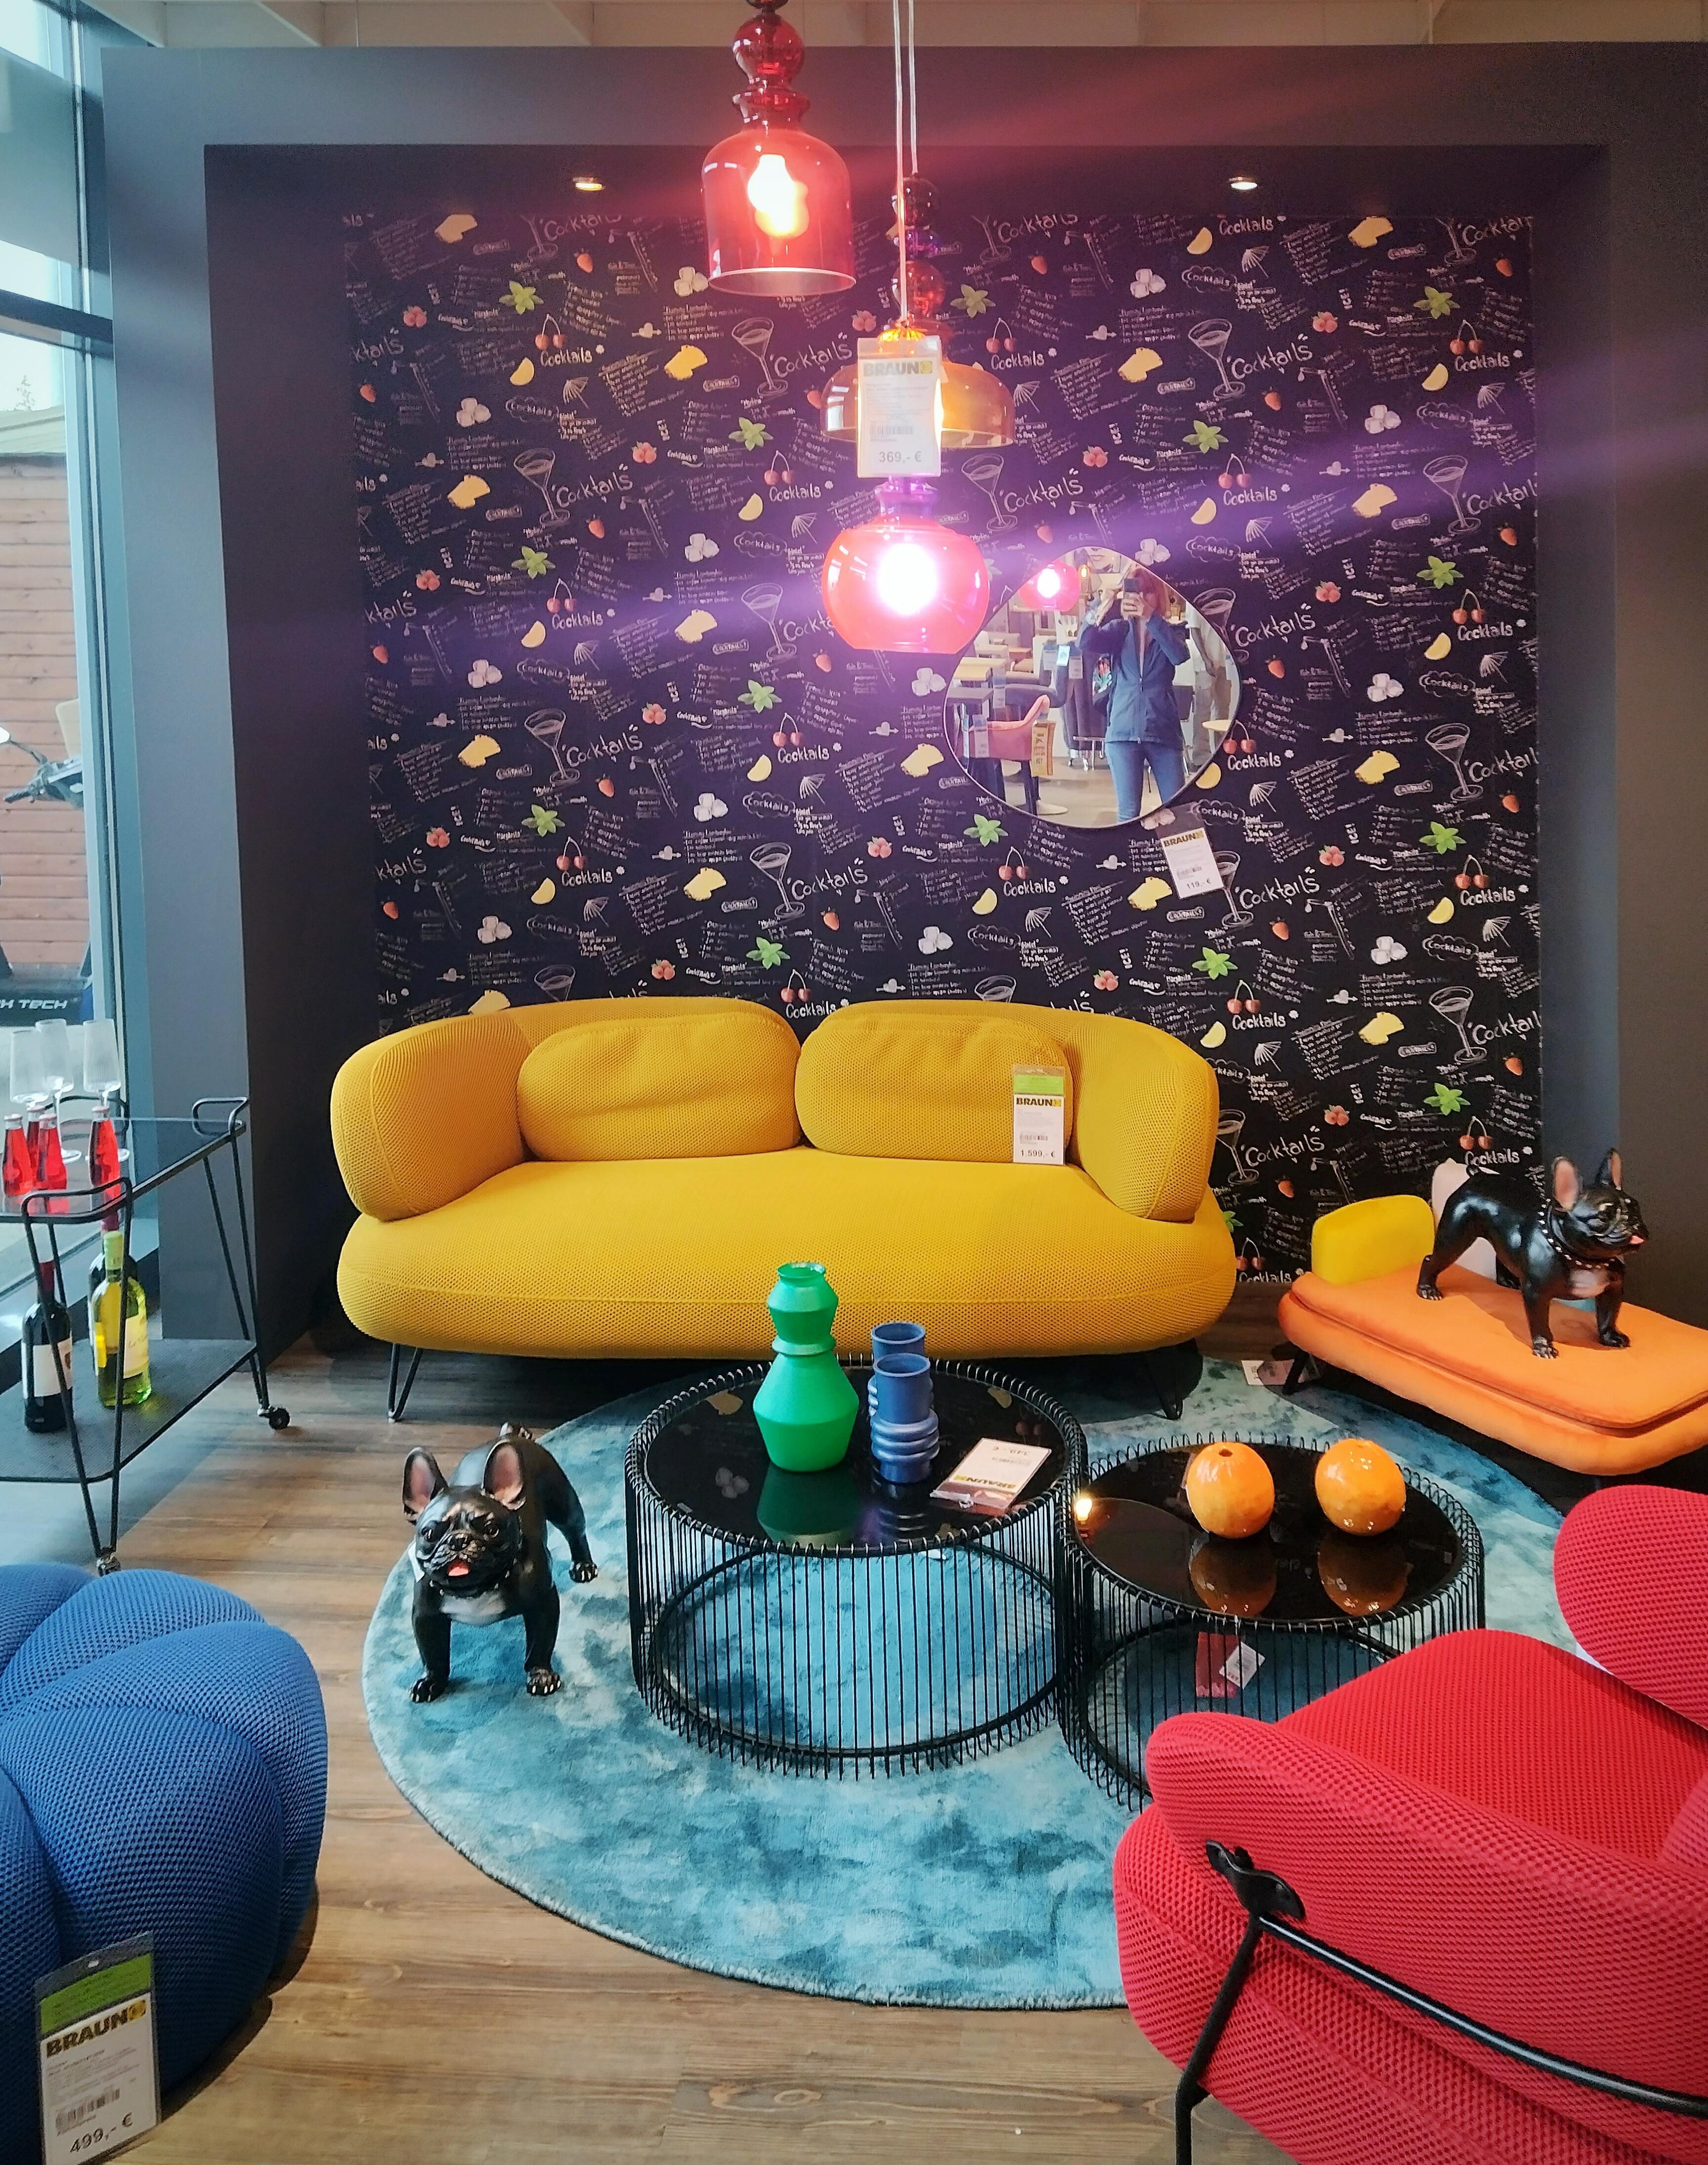 Möbelhausbesuch 😅
#wohnzimmer #farbenfroh